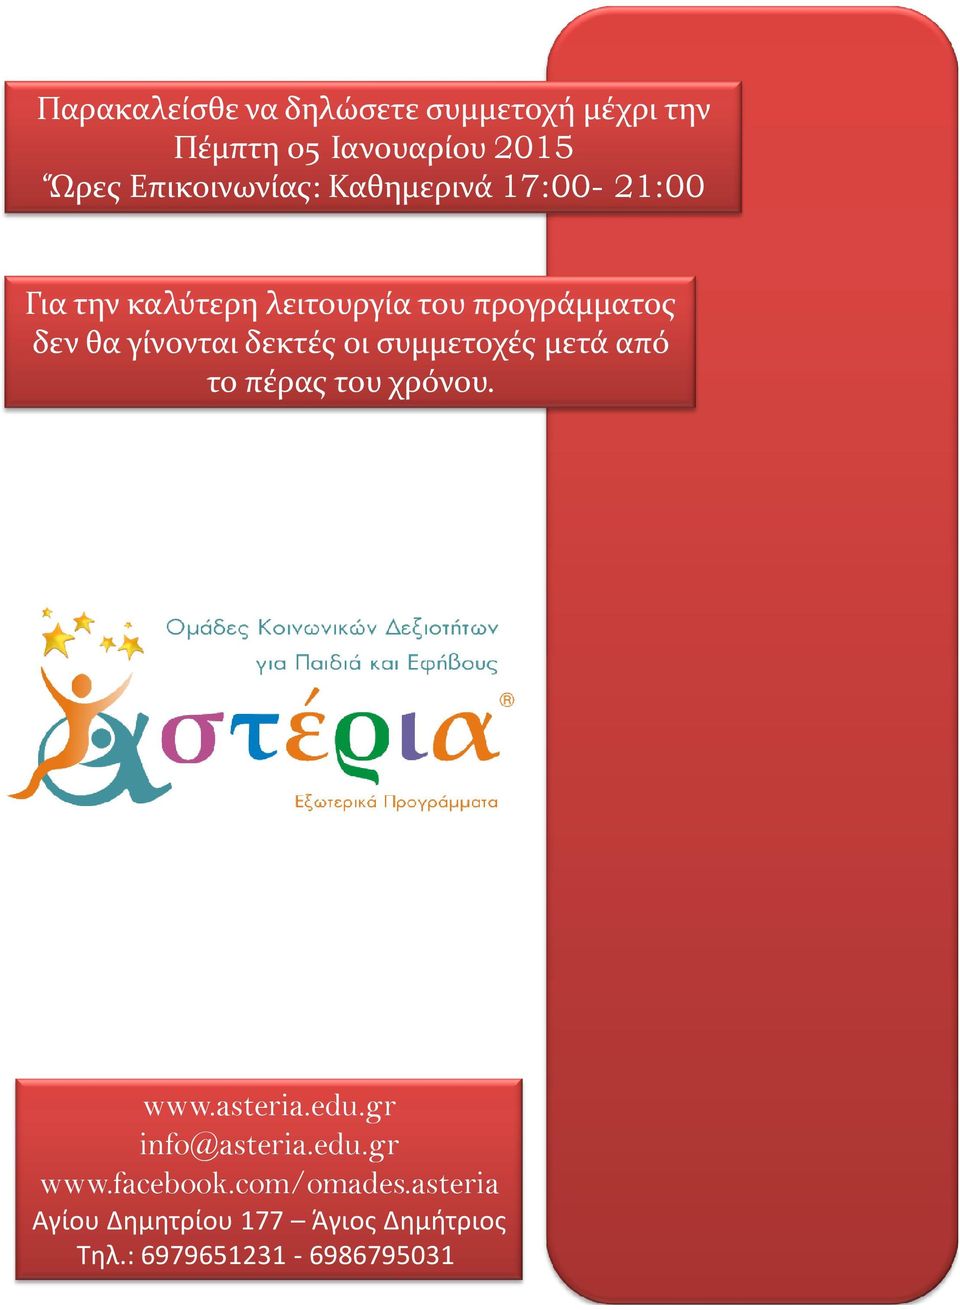 δεκτές οι συμμετοχές μετά από το πέρας του χρόνου. www.asteria.edu.gr info@asteria.edu.gr www.